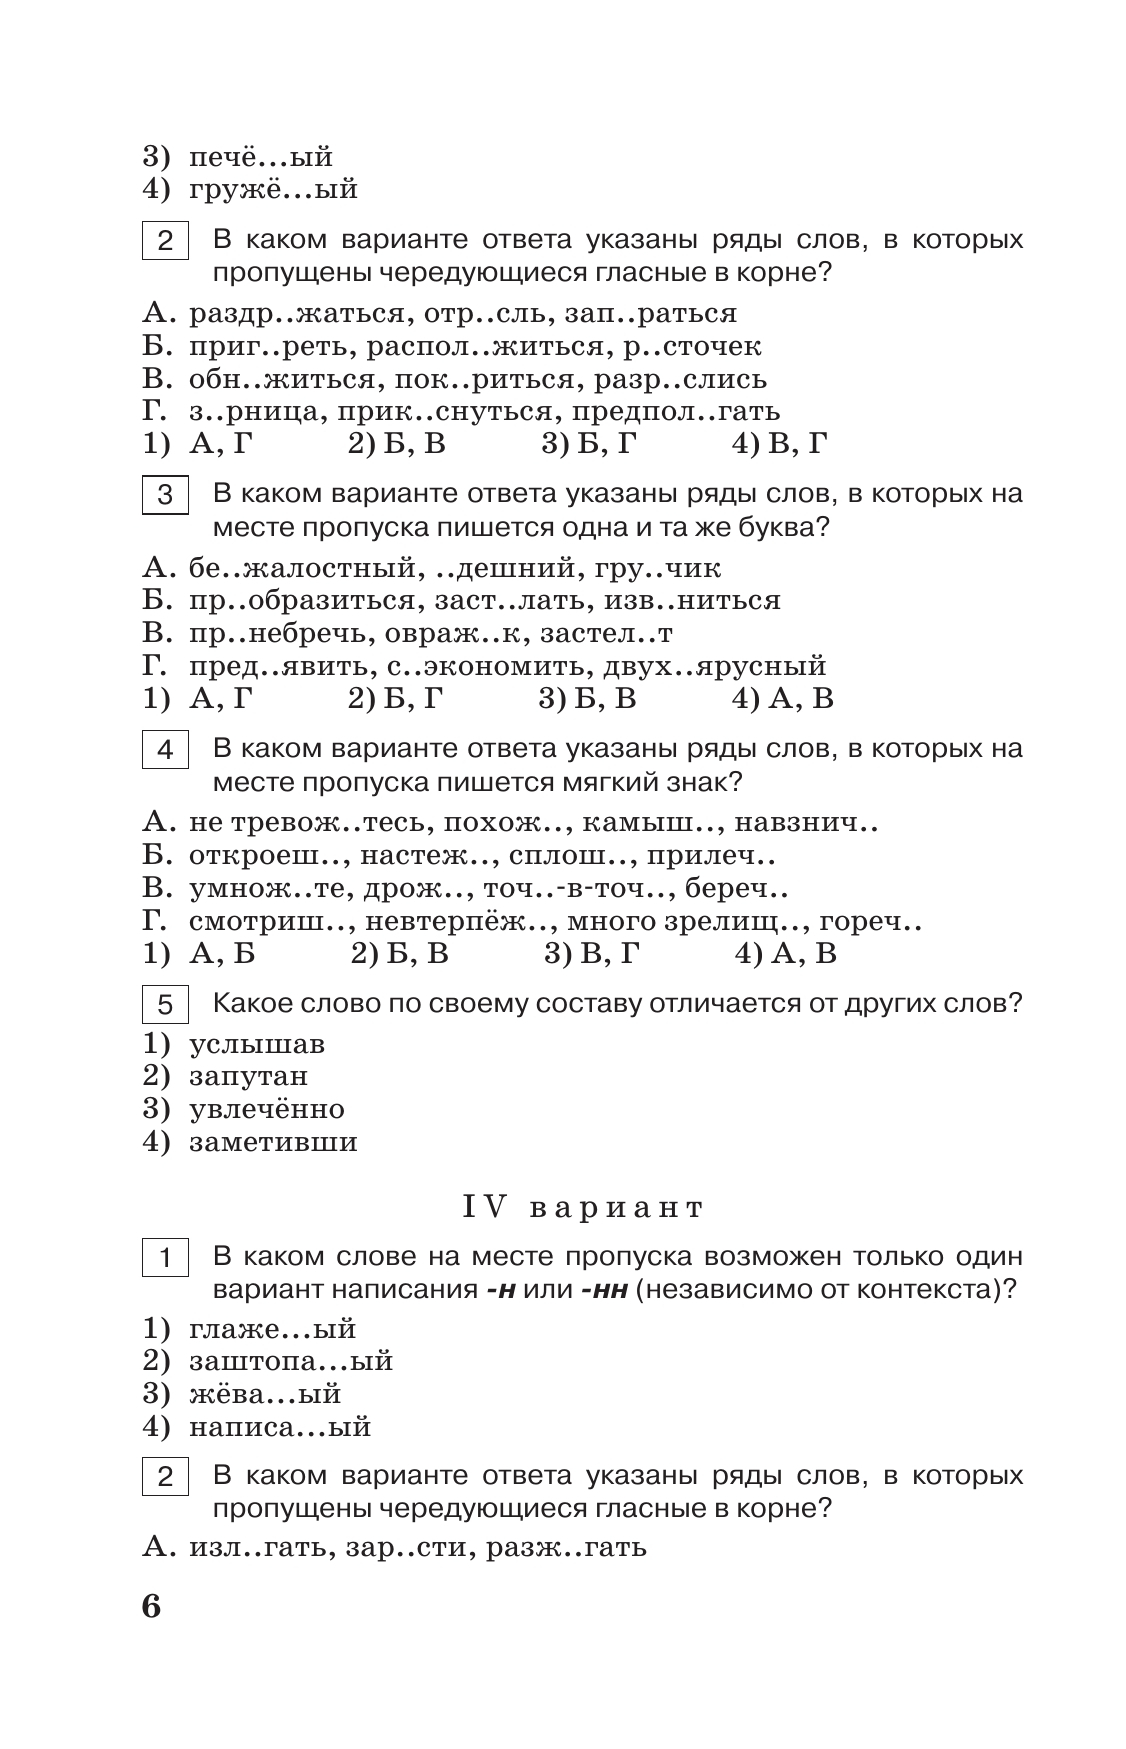 Тестовые задания по русскому языку. 8 класс. 3